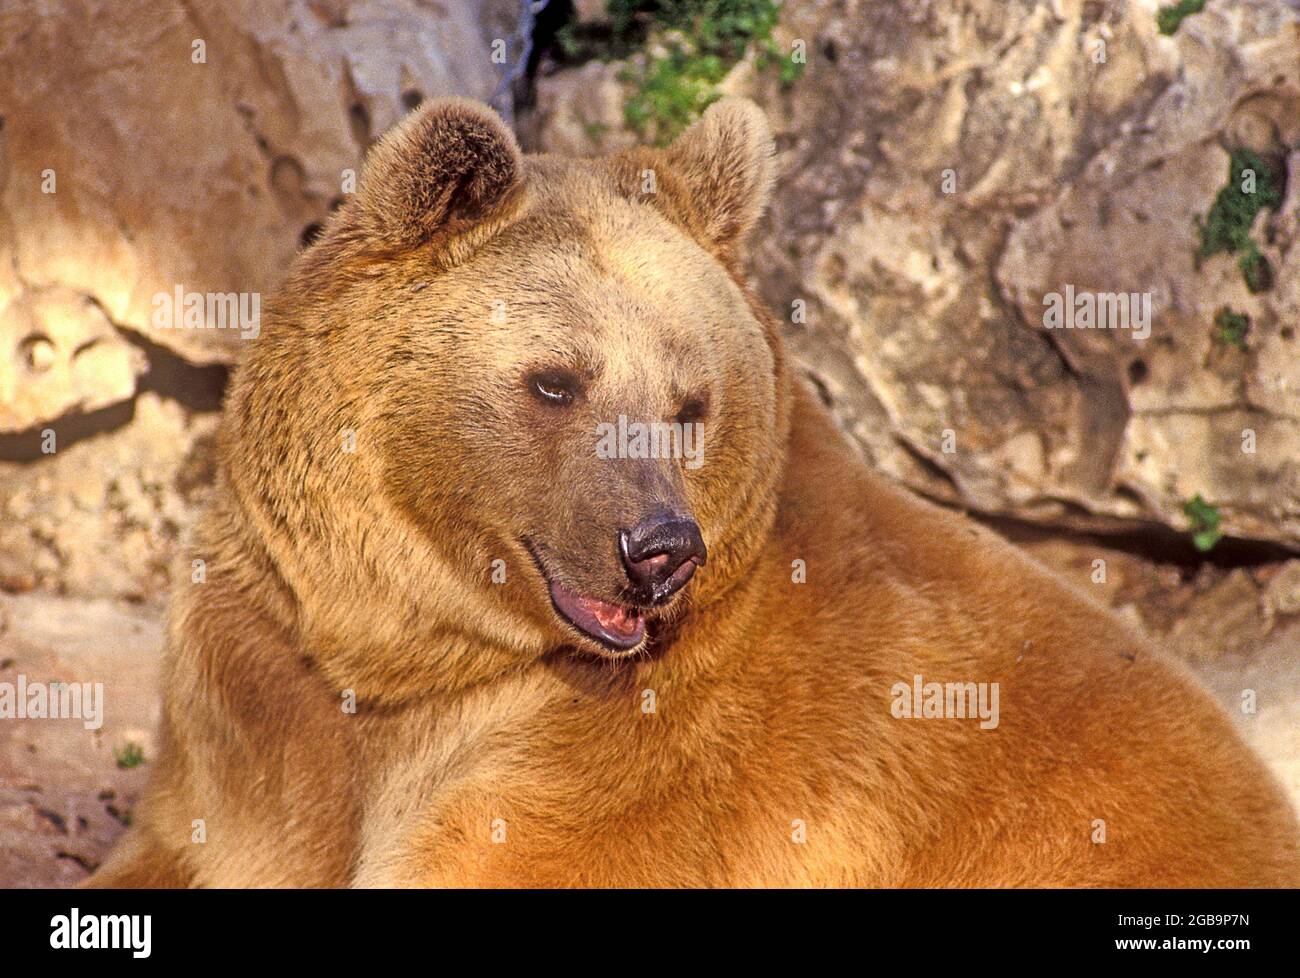 L'ours brun syrien (Ursus arctos syriacus ou Ursus arctos arctos) est une sous-espèce relativement petite d'ours brun originaire du Moyen-Orient et du Moyen-Orient Banque D'Images